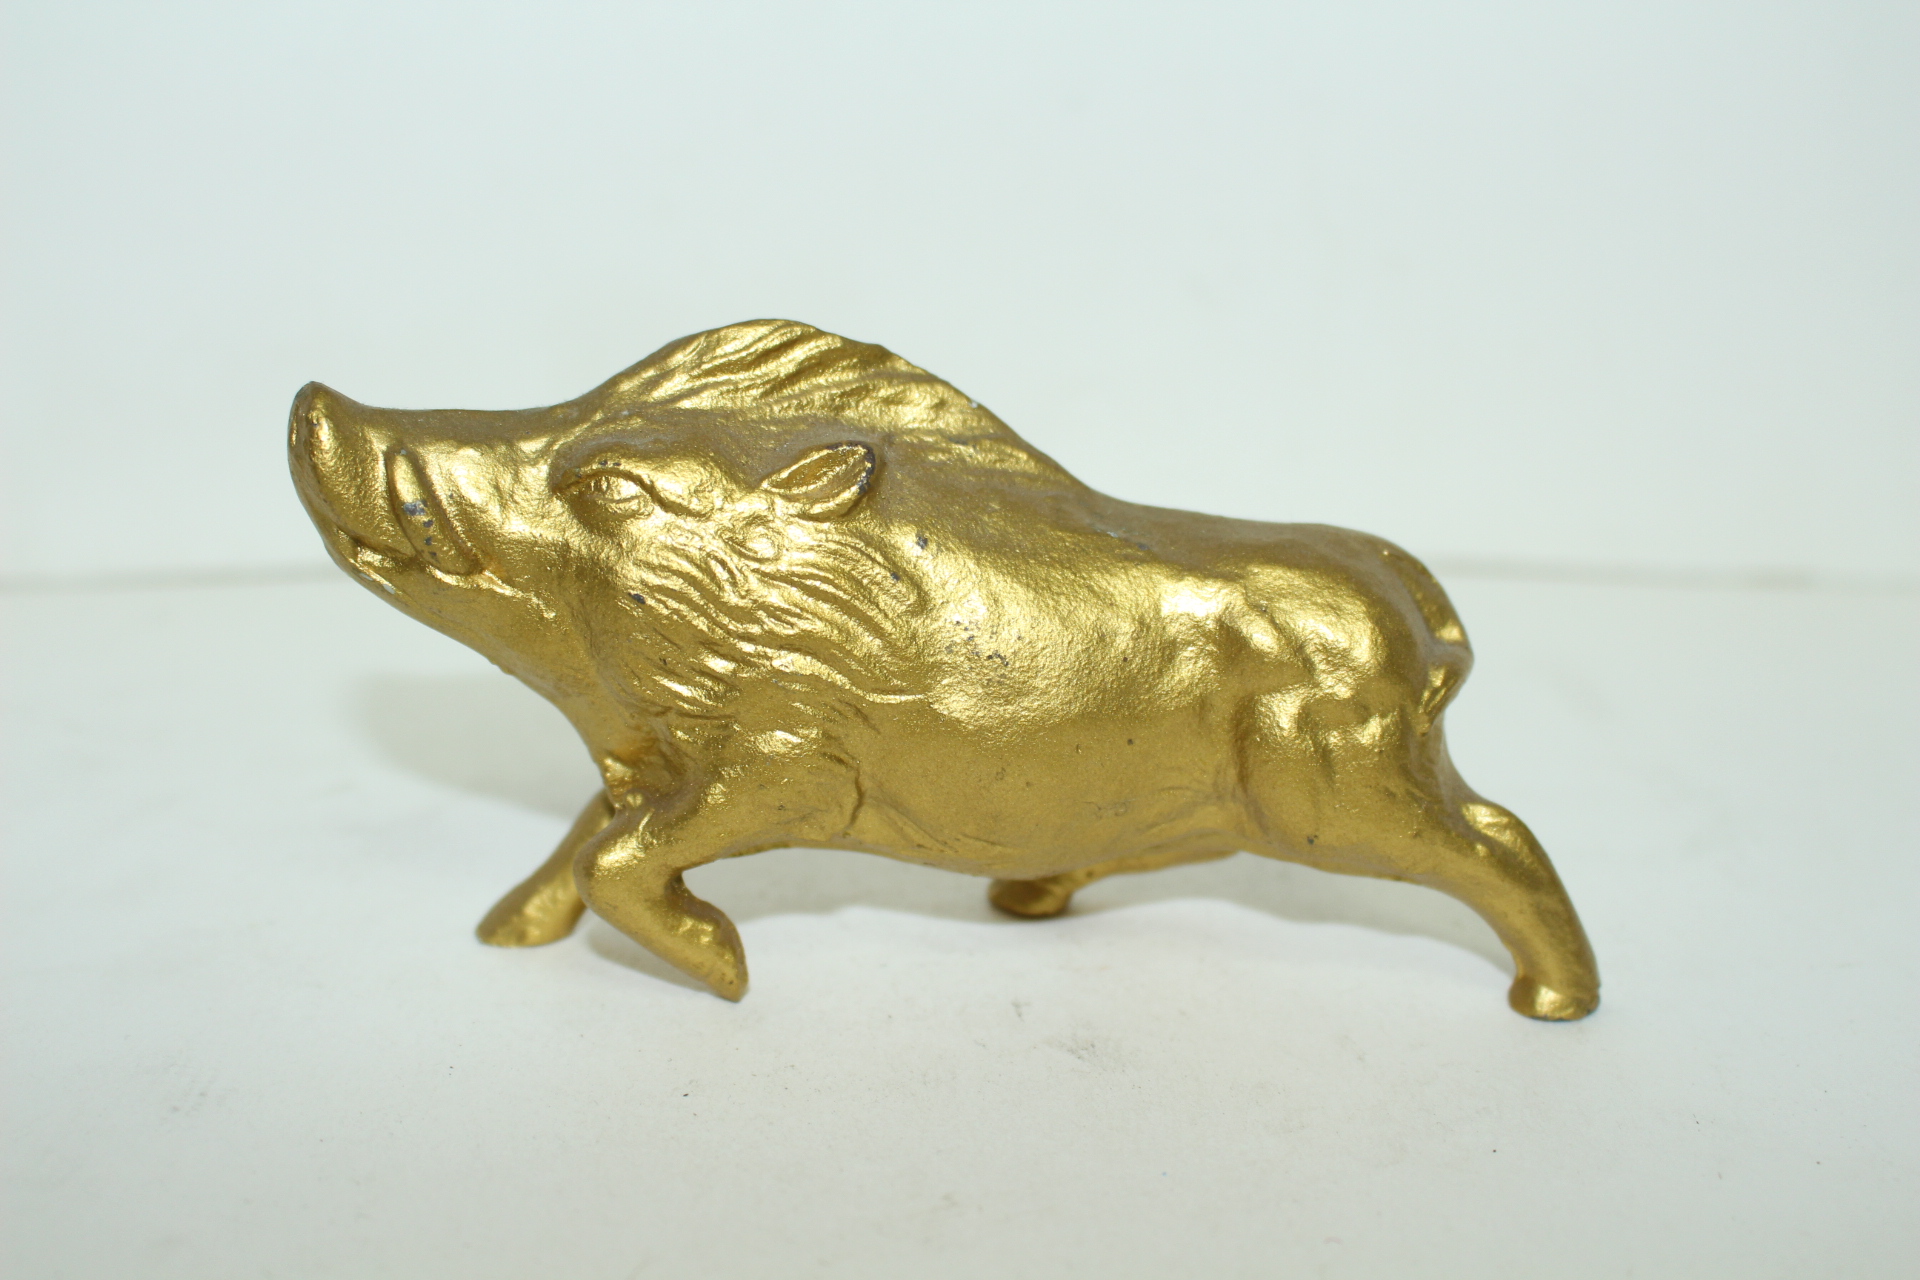 묵직한 무쇠에 금채된 멧돼지 조각상